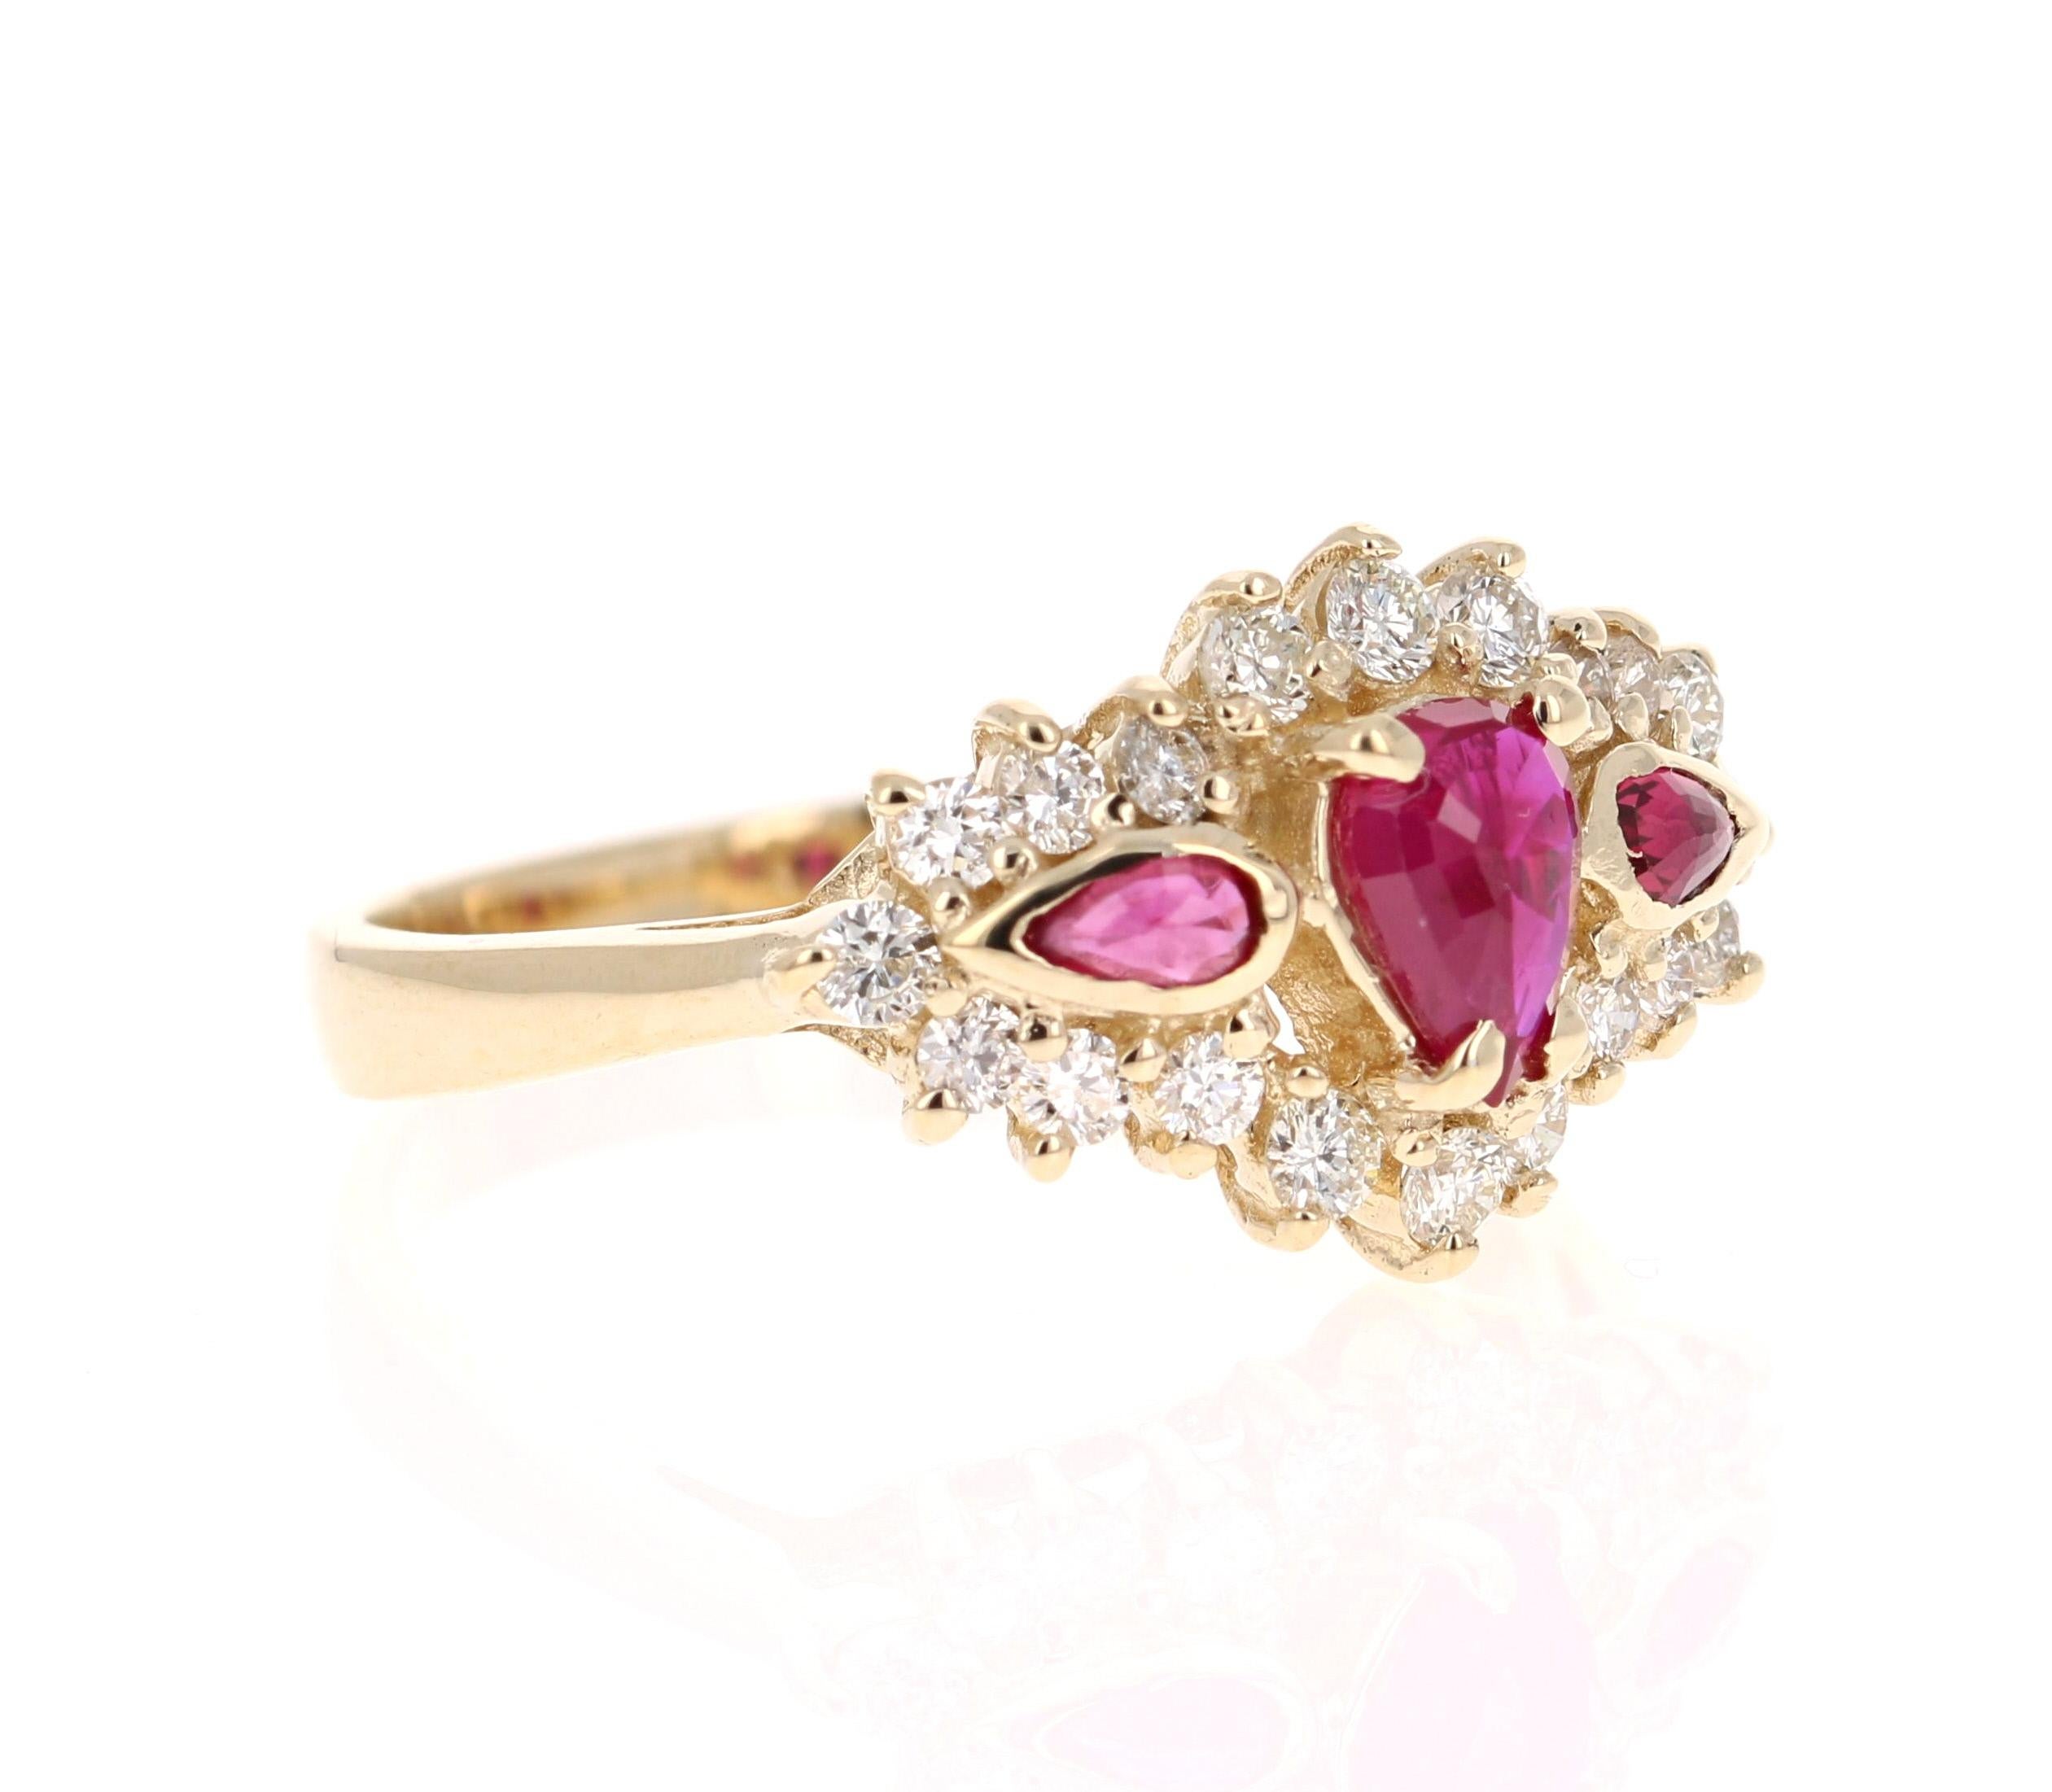 Einfach schöner Rubin-Diamant-Ring mit 3 birmanischen Rubinen im Birnenschliff mit einem Gewicht von 0,63 Karat.  Es gibt 20 Diamanten im Rundschliff mit einem Gewicht von 0,48 Karat. Das Gesamtkaratgewicht des Rings beträgt 1,10 Karat. Die Reinheit